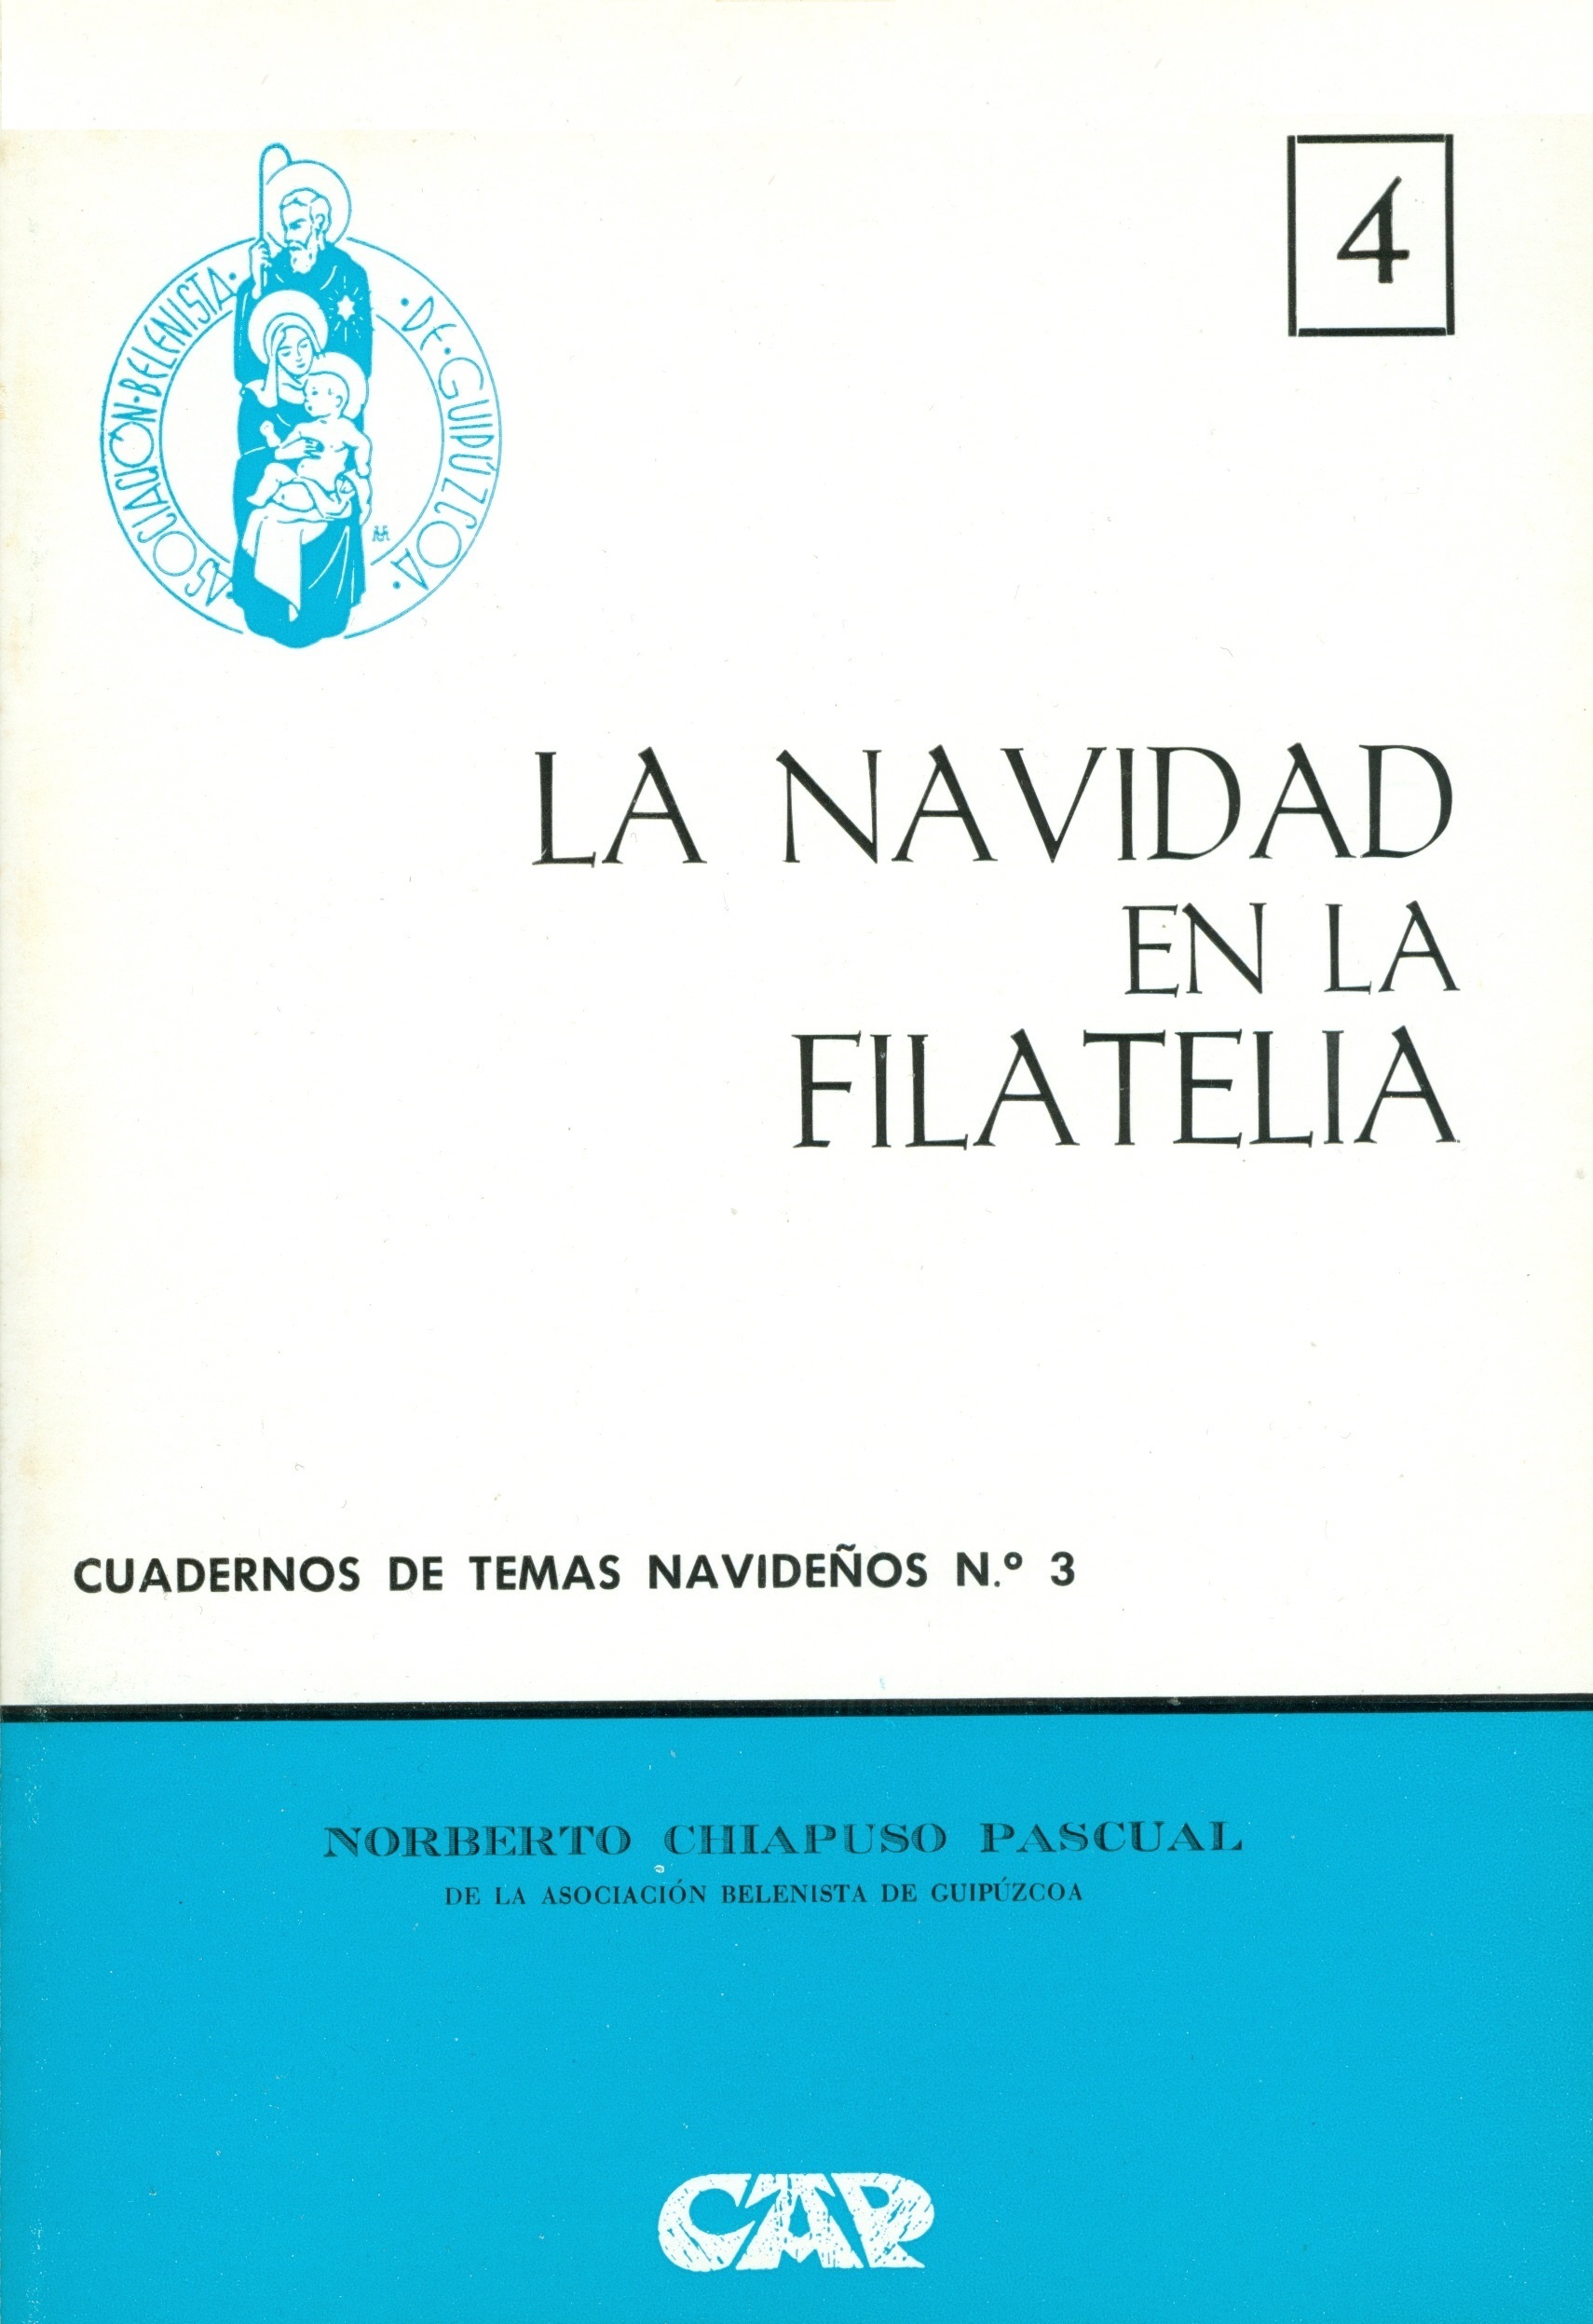 Portada del Cuaderno de Temas Navideños nº 3, "La Navidad en la filatelia" escrito por Norberto Chiapuso Pascual y editado por la Asociación Belenista de Guipúzcoa (1974)